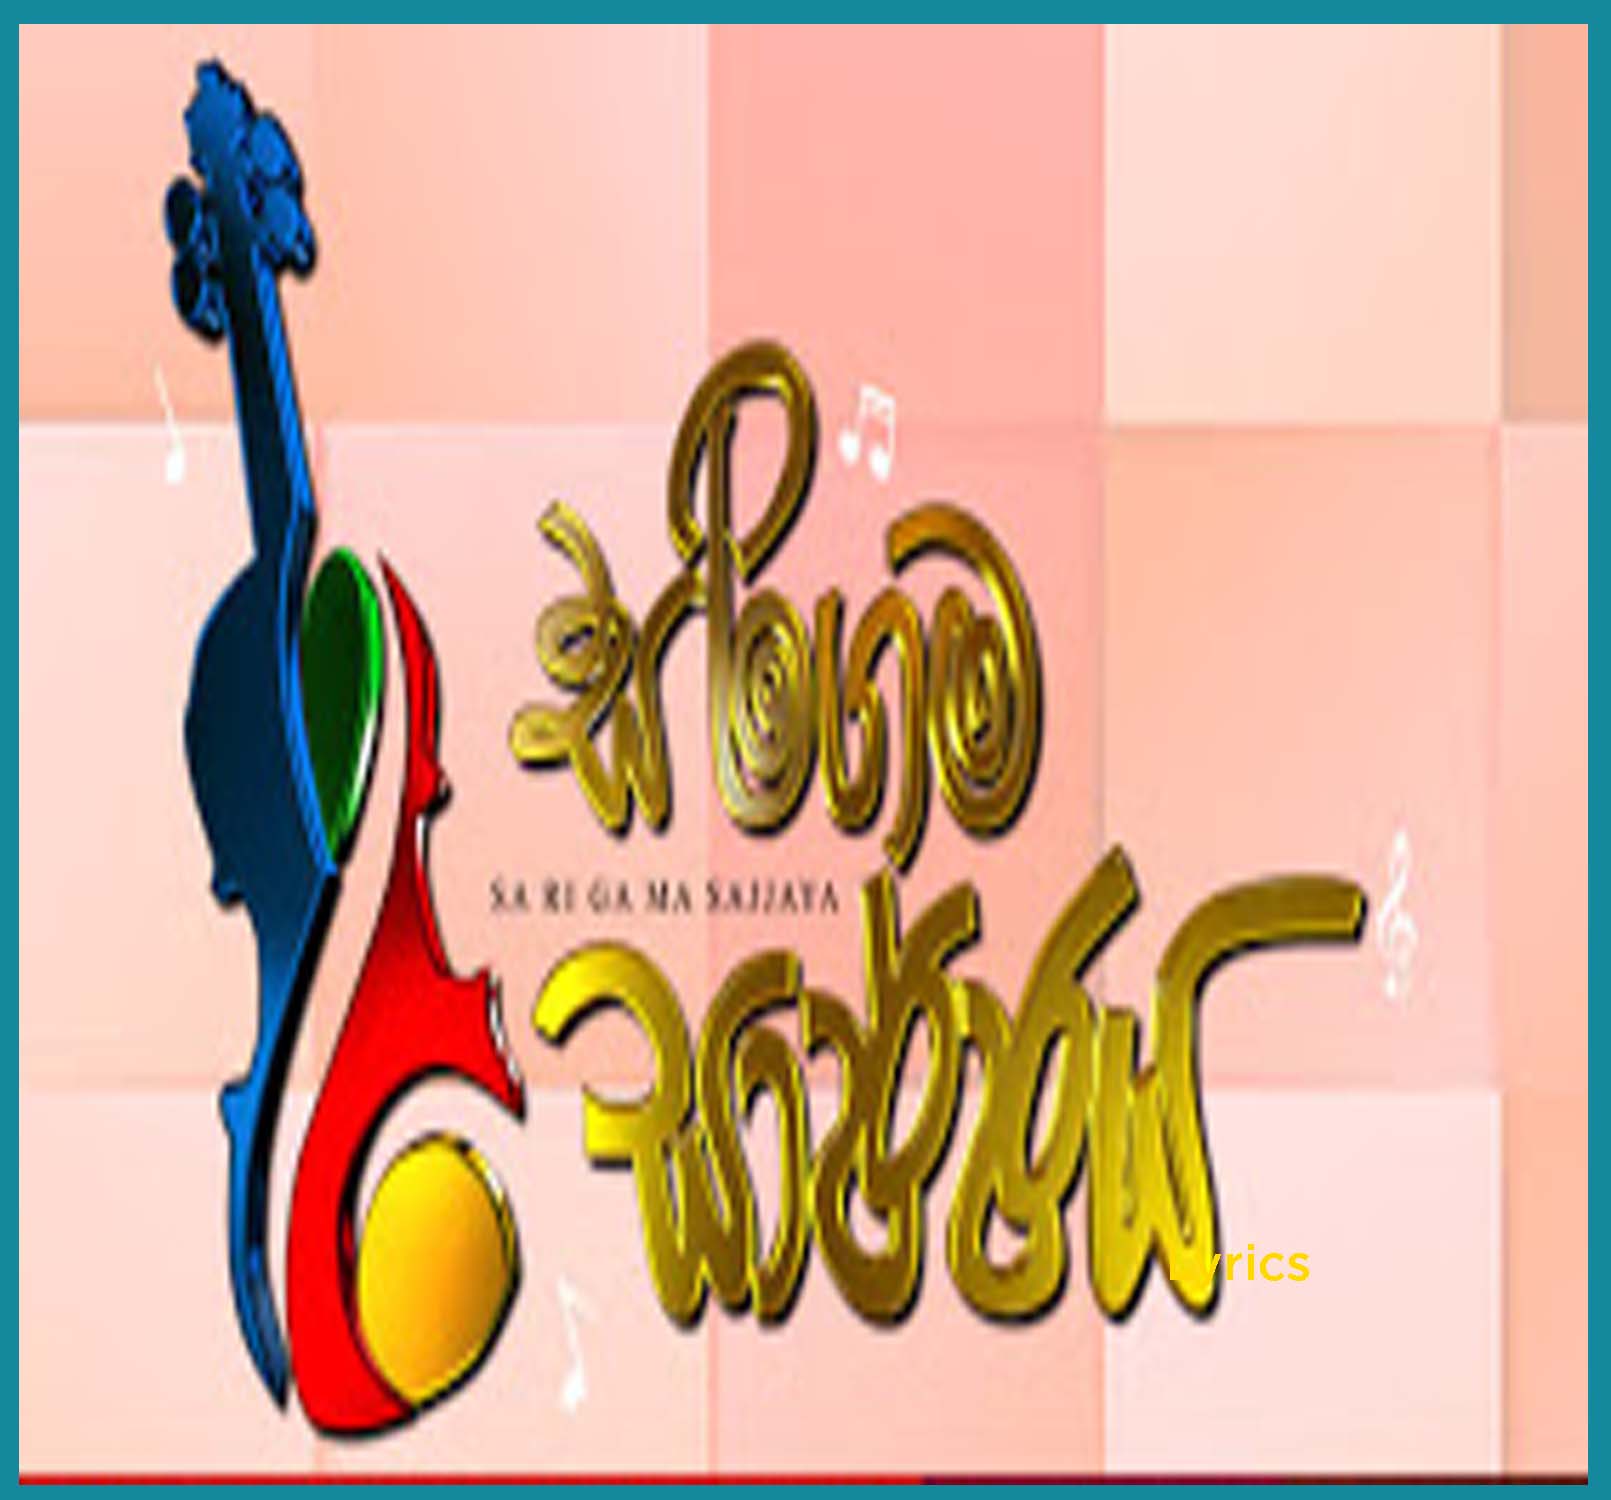 214 - Sadawatha - Bashi Madubashini - Sirasa FM Sarigama Sajjaya mp3 Image